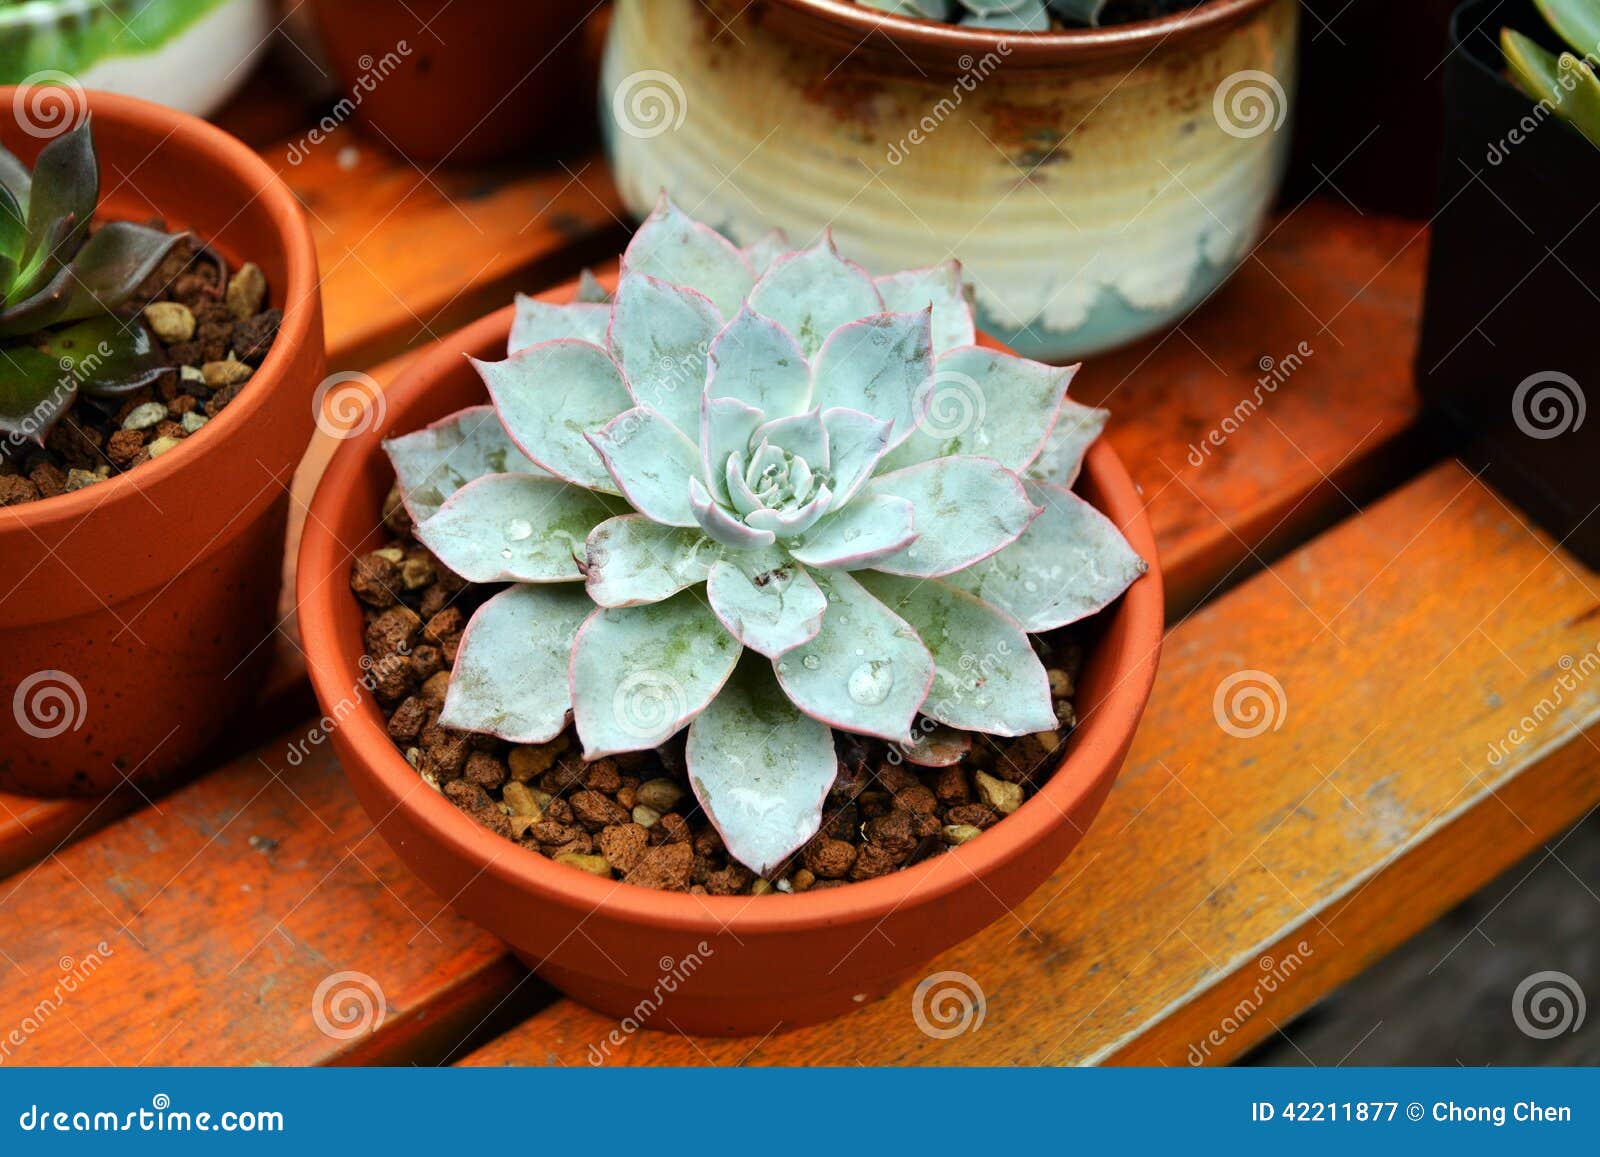 Succulent plants pot stock image. Image of succulent - 42211877